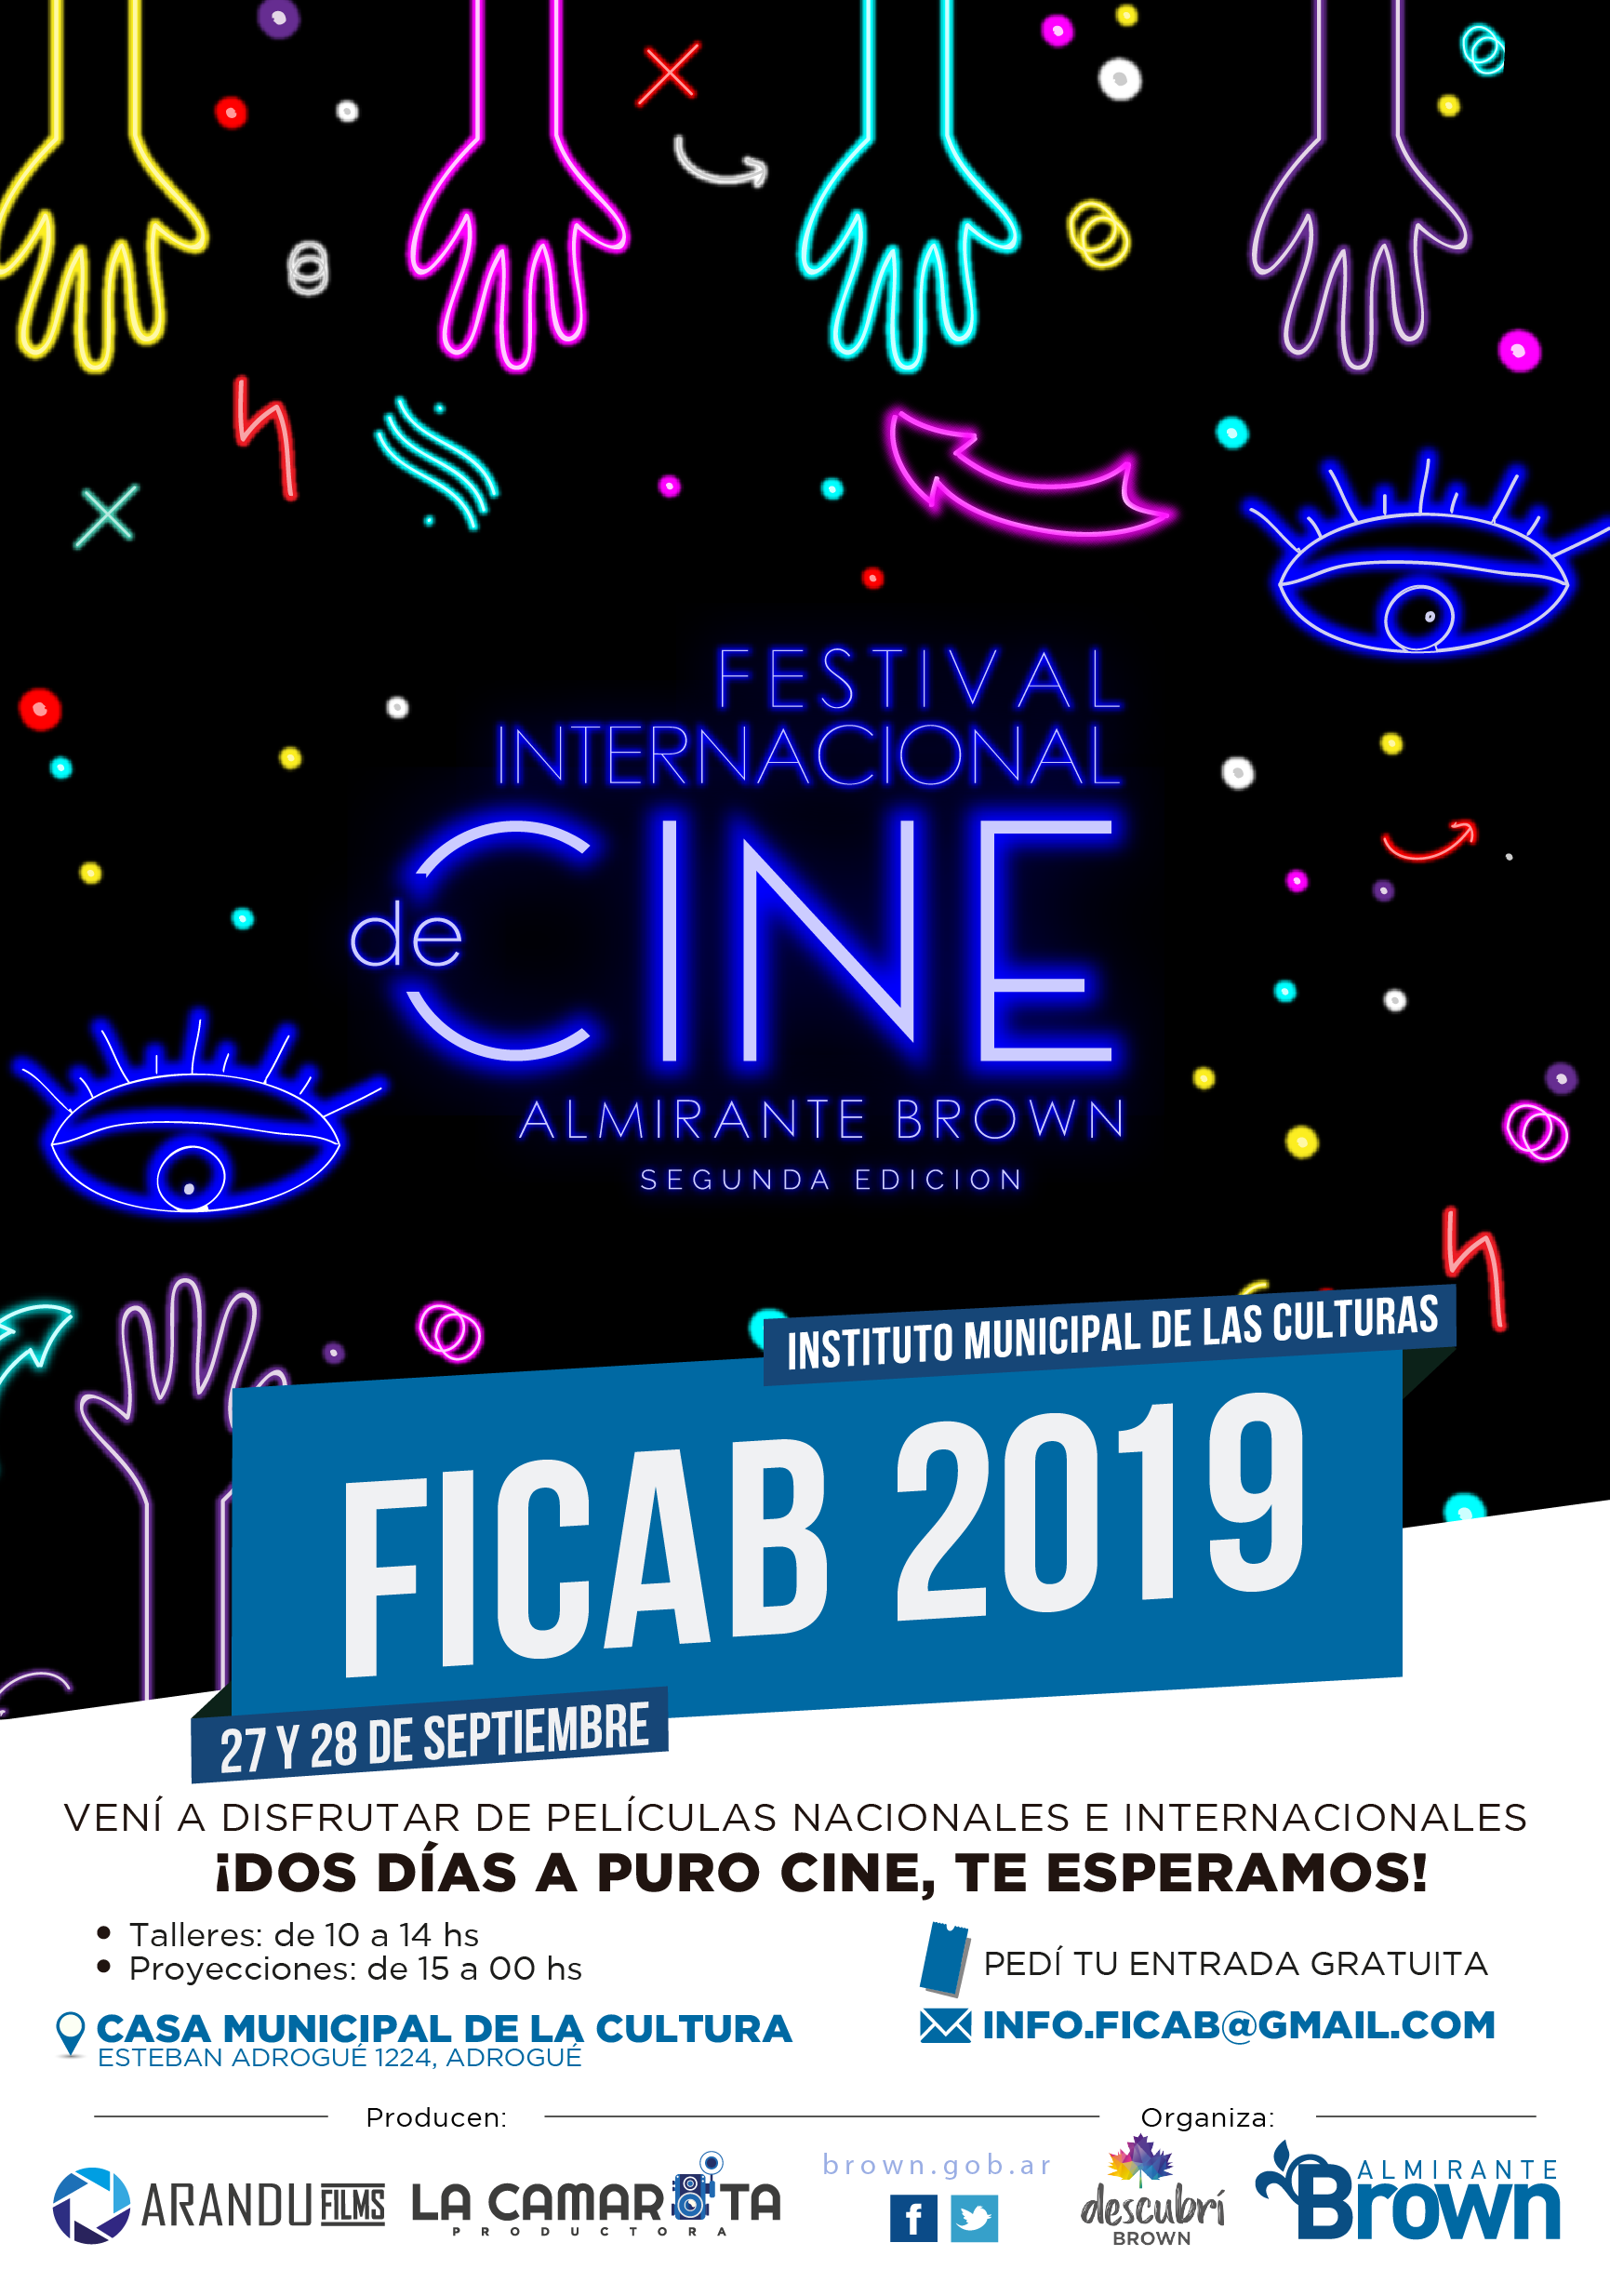 Convocan a cineastas y audiovisualistas para el 2° Festival Internacional de Cine Almirante Brown imagen